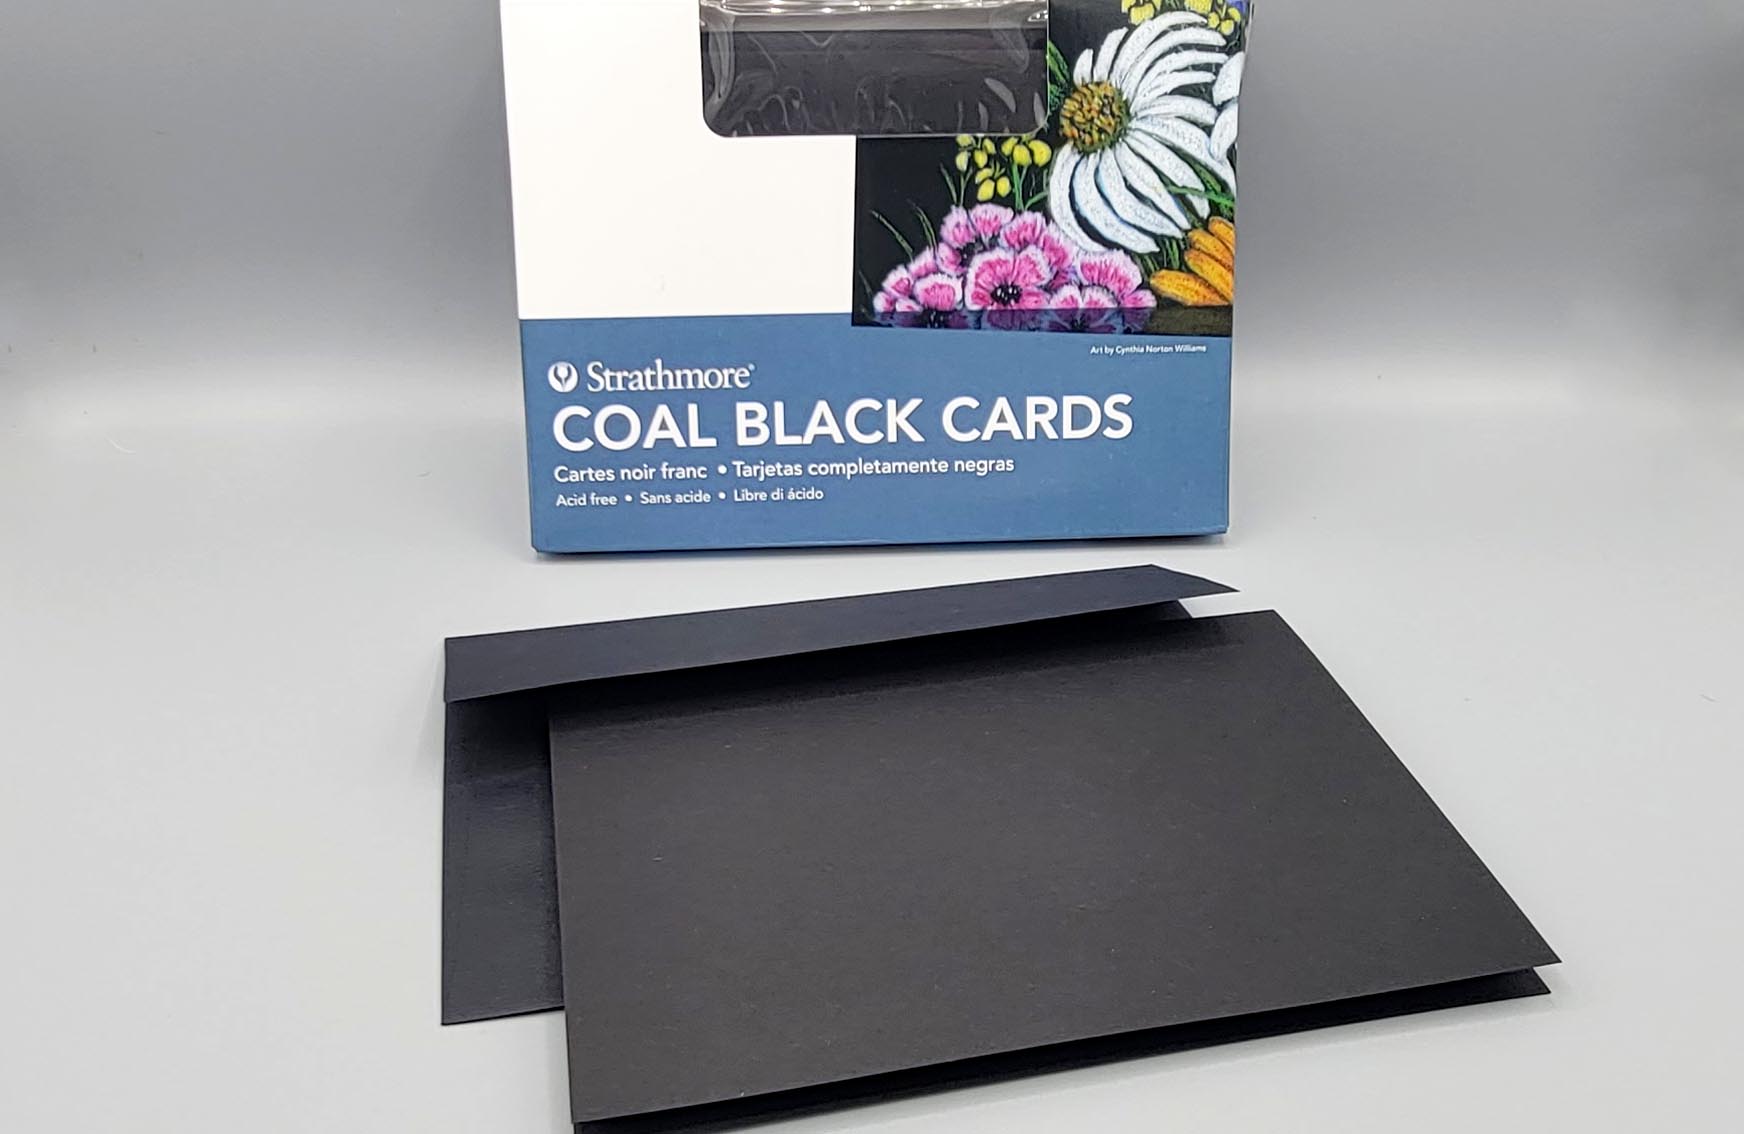 Strathmore Coal Black Artagain Cards • PAPER SCISSORS STONE